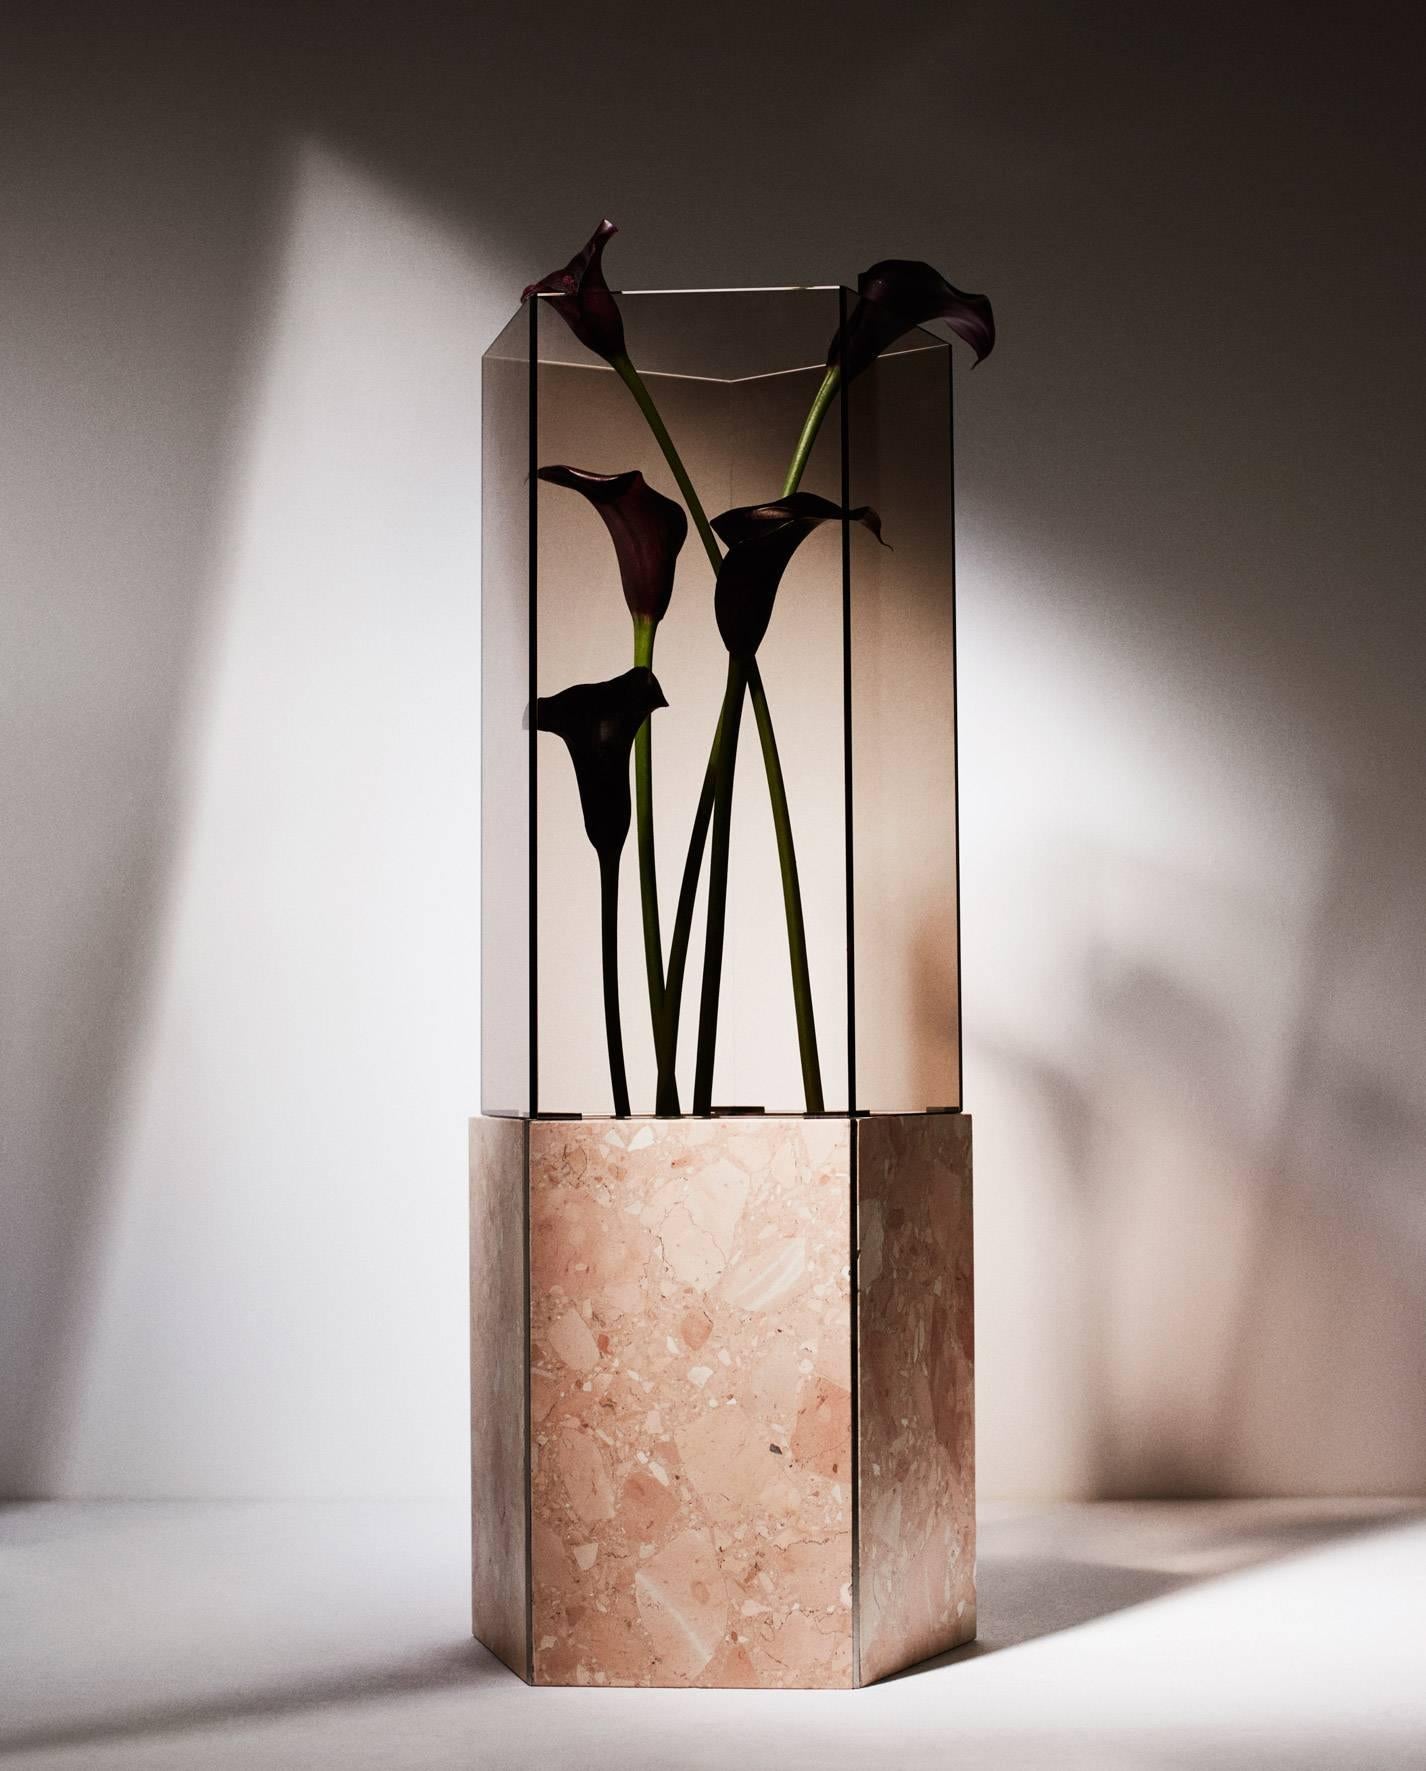 Im Rahmen der von Gianluca Longo kuratierten Ausstellung Vasen und Gefäße in der David Gill Gallery präsentierte Tinos Seubert eine neue Edition von Narcissus-Vasen aus italienischem Terrazzo Rosa Perlino und Rosso Levante, poliertem Edelstahl und